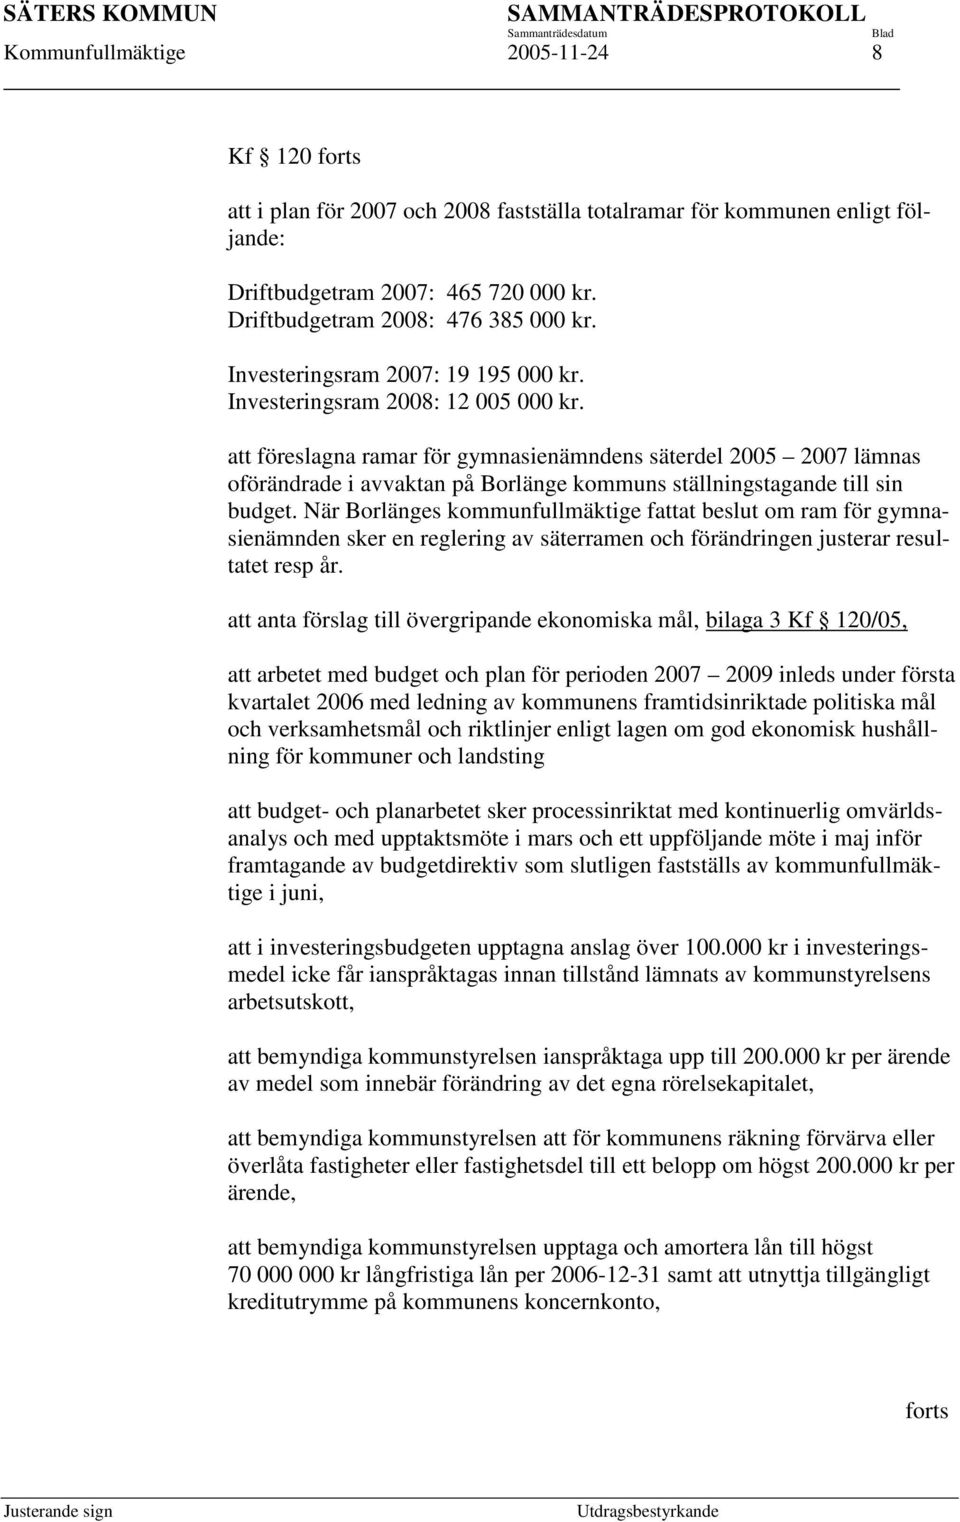 att föreslagna ramar för gymnasienämndens säterdel 2005 2007 lämnas oförändrade i avvaktan på Borlänge kommuns ställningstagande till sin budget.